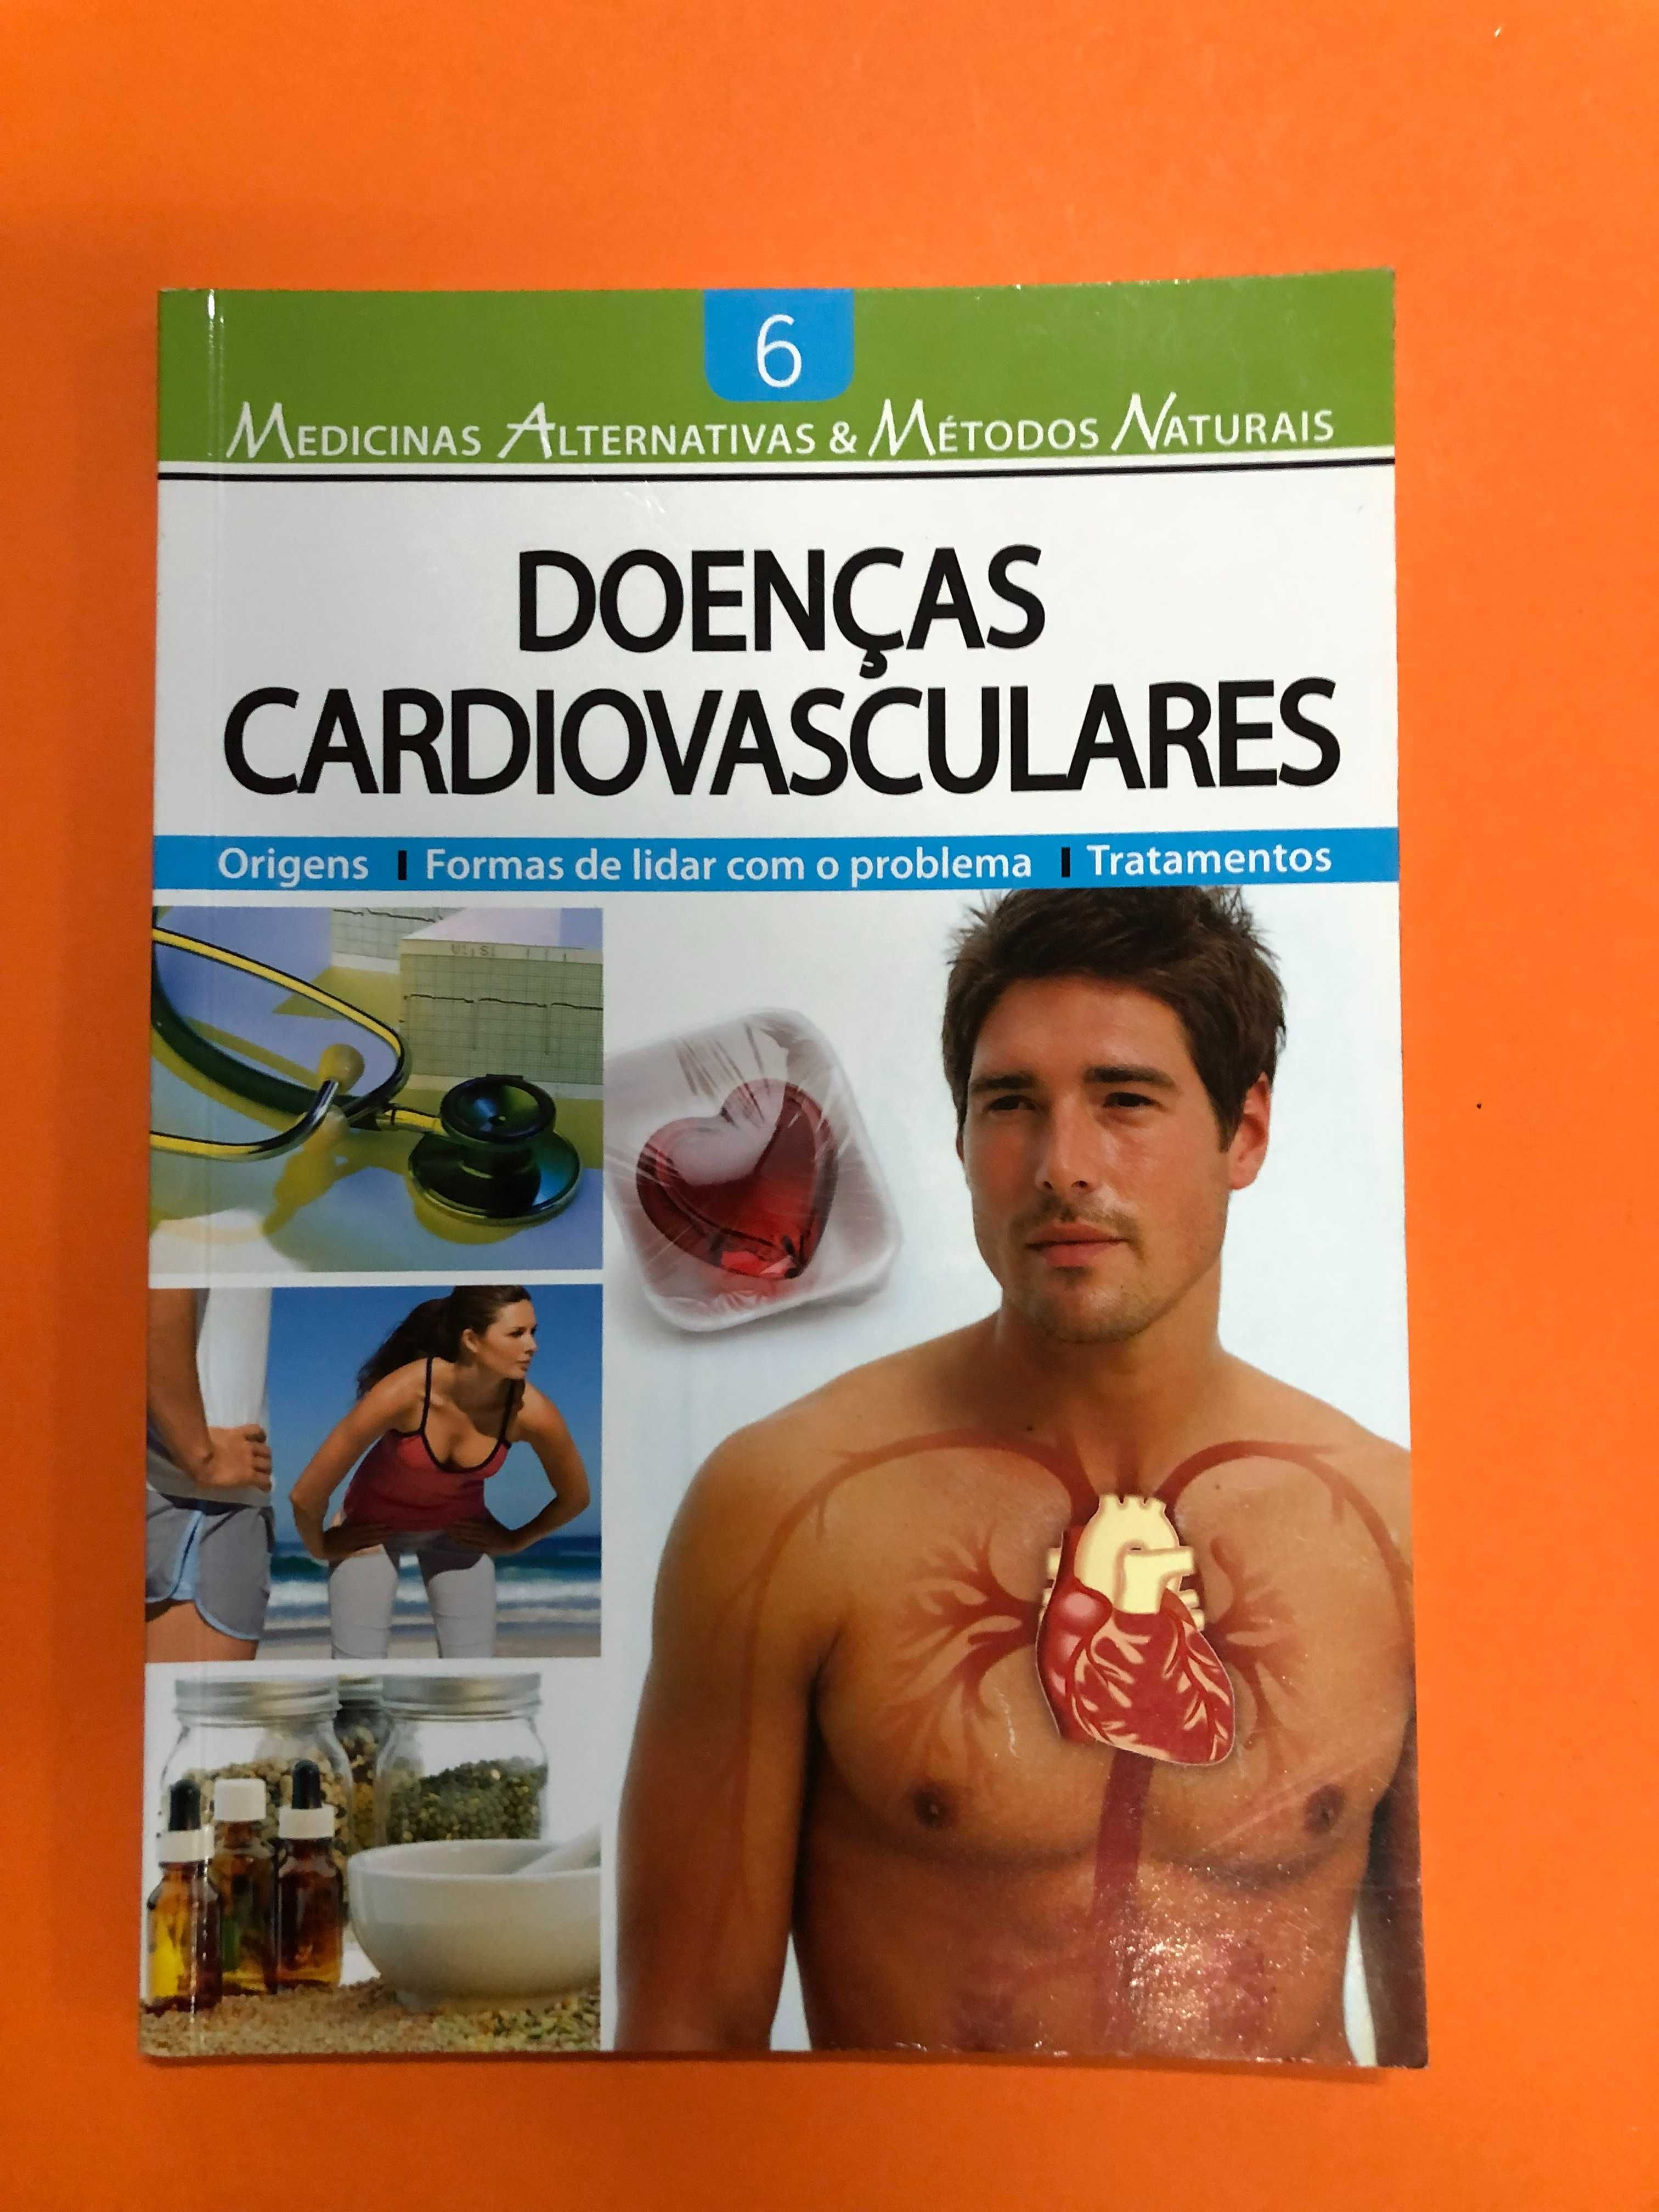 Medicinas alternativas & métodos naturais – Doenças cardiovasculares